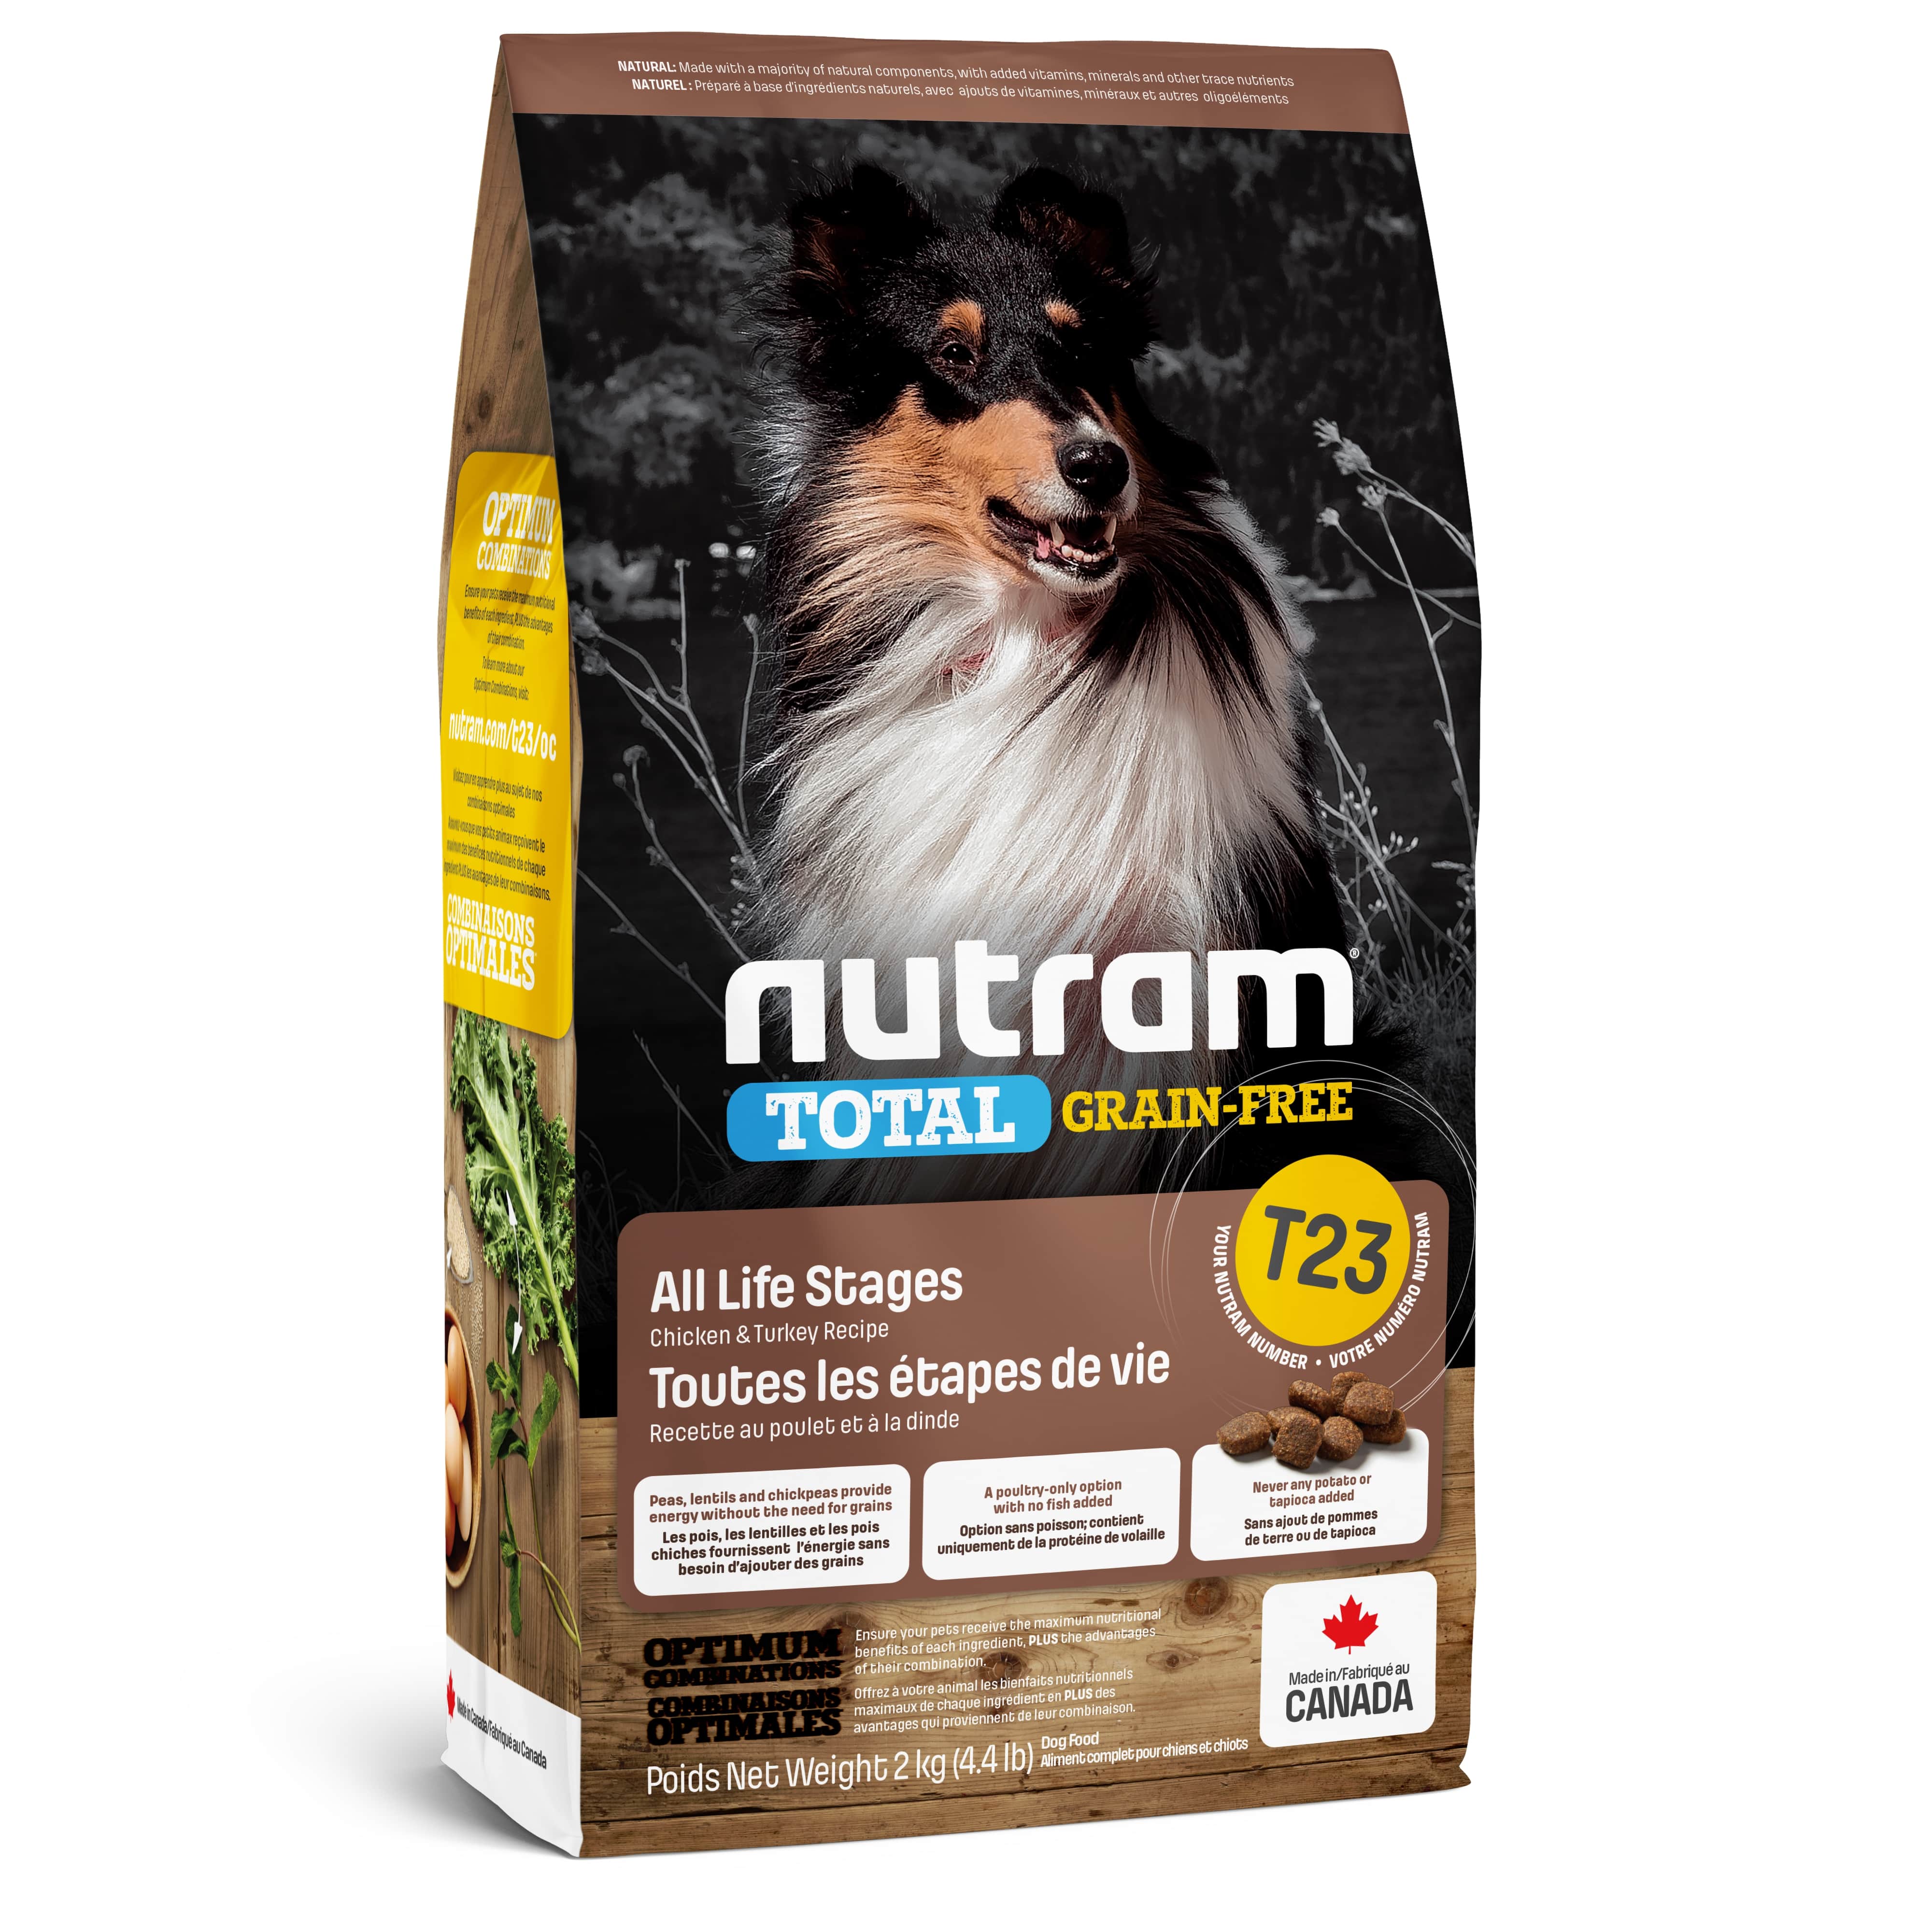 T23 Nutram Total Grain-Free® Turkey, Chiken & Duck Dog Food